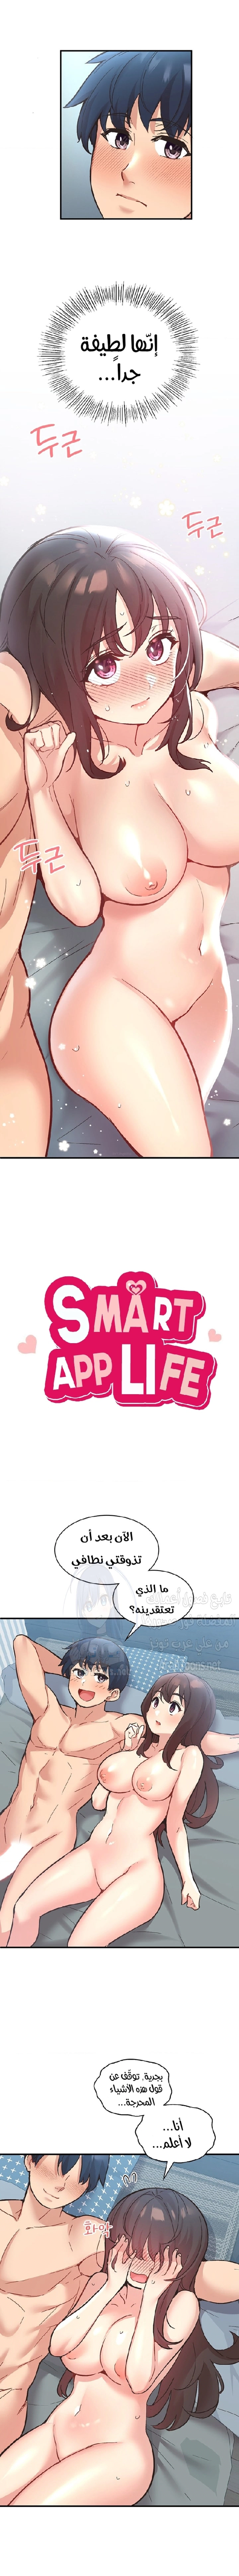 Smart App Life - 9 - 6531943cd1ea5.webp